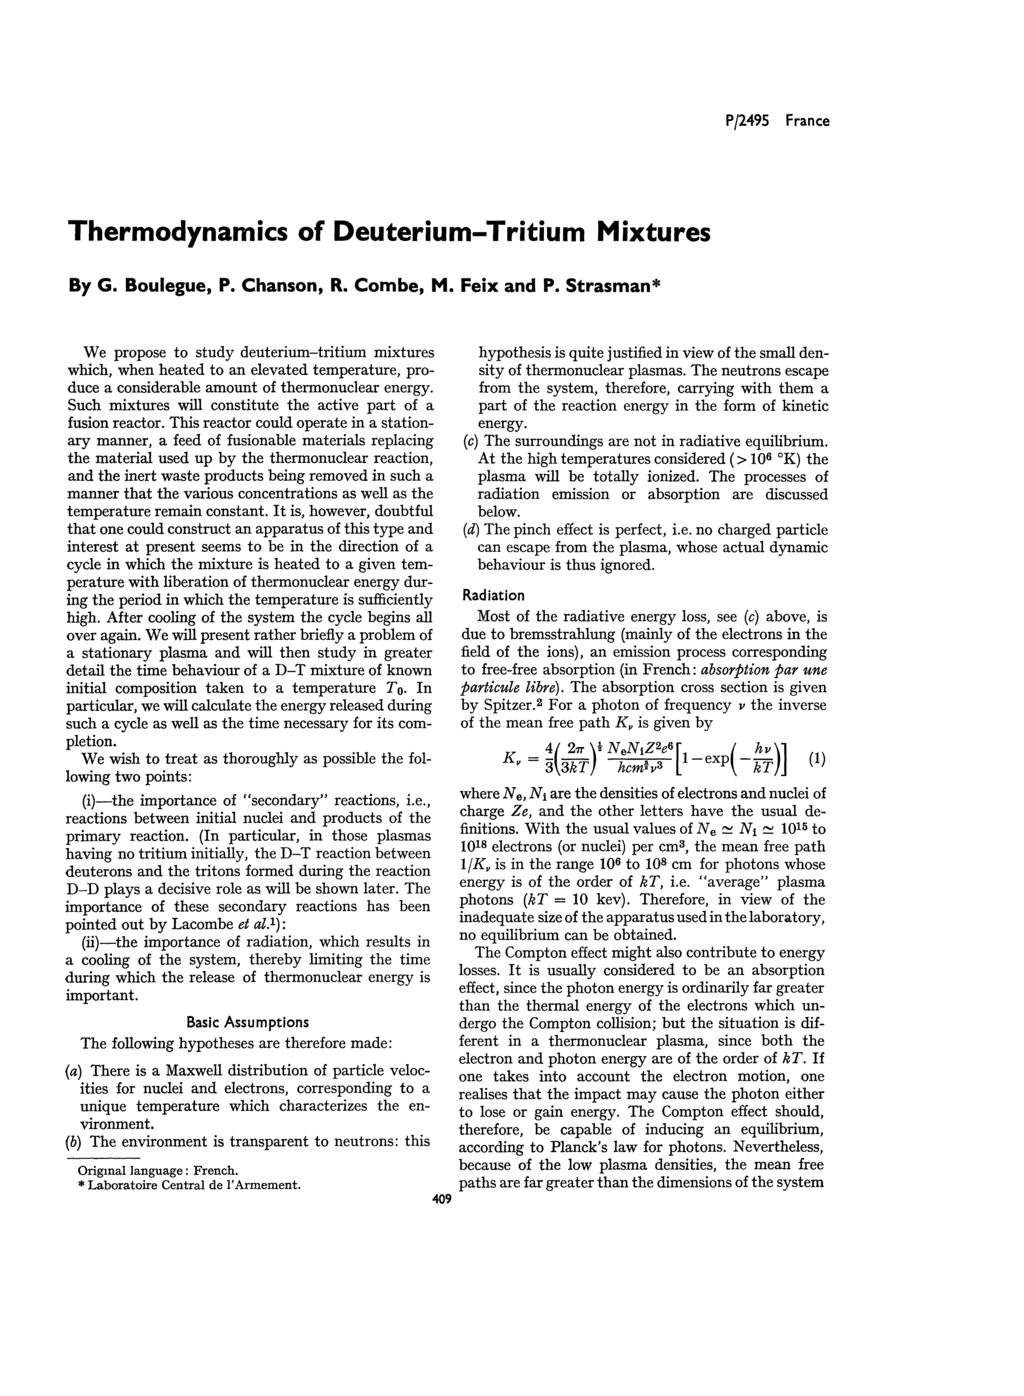 P/2495 France Thermodynamics of Deuterium-Tritium Mixtures By G. Boulegue, P. Chanson, R. Combe, M, Feix and P.